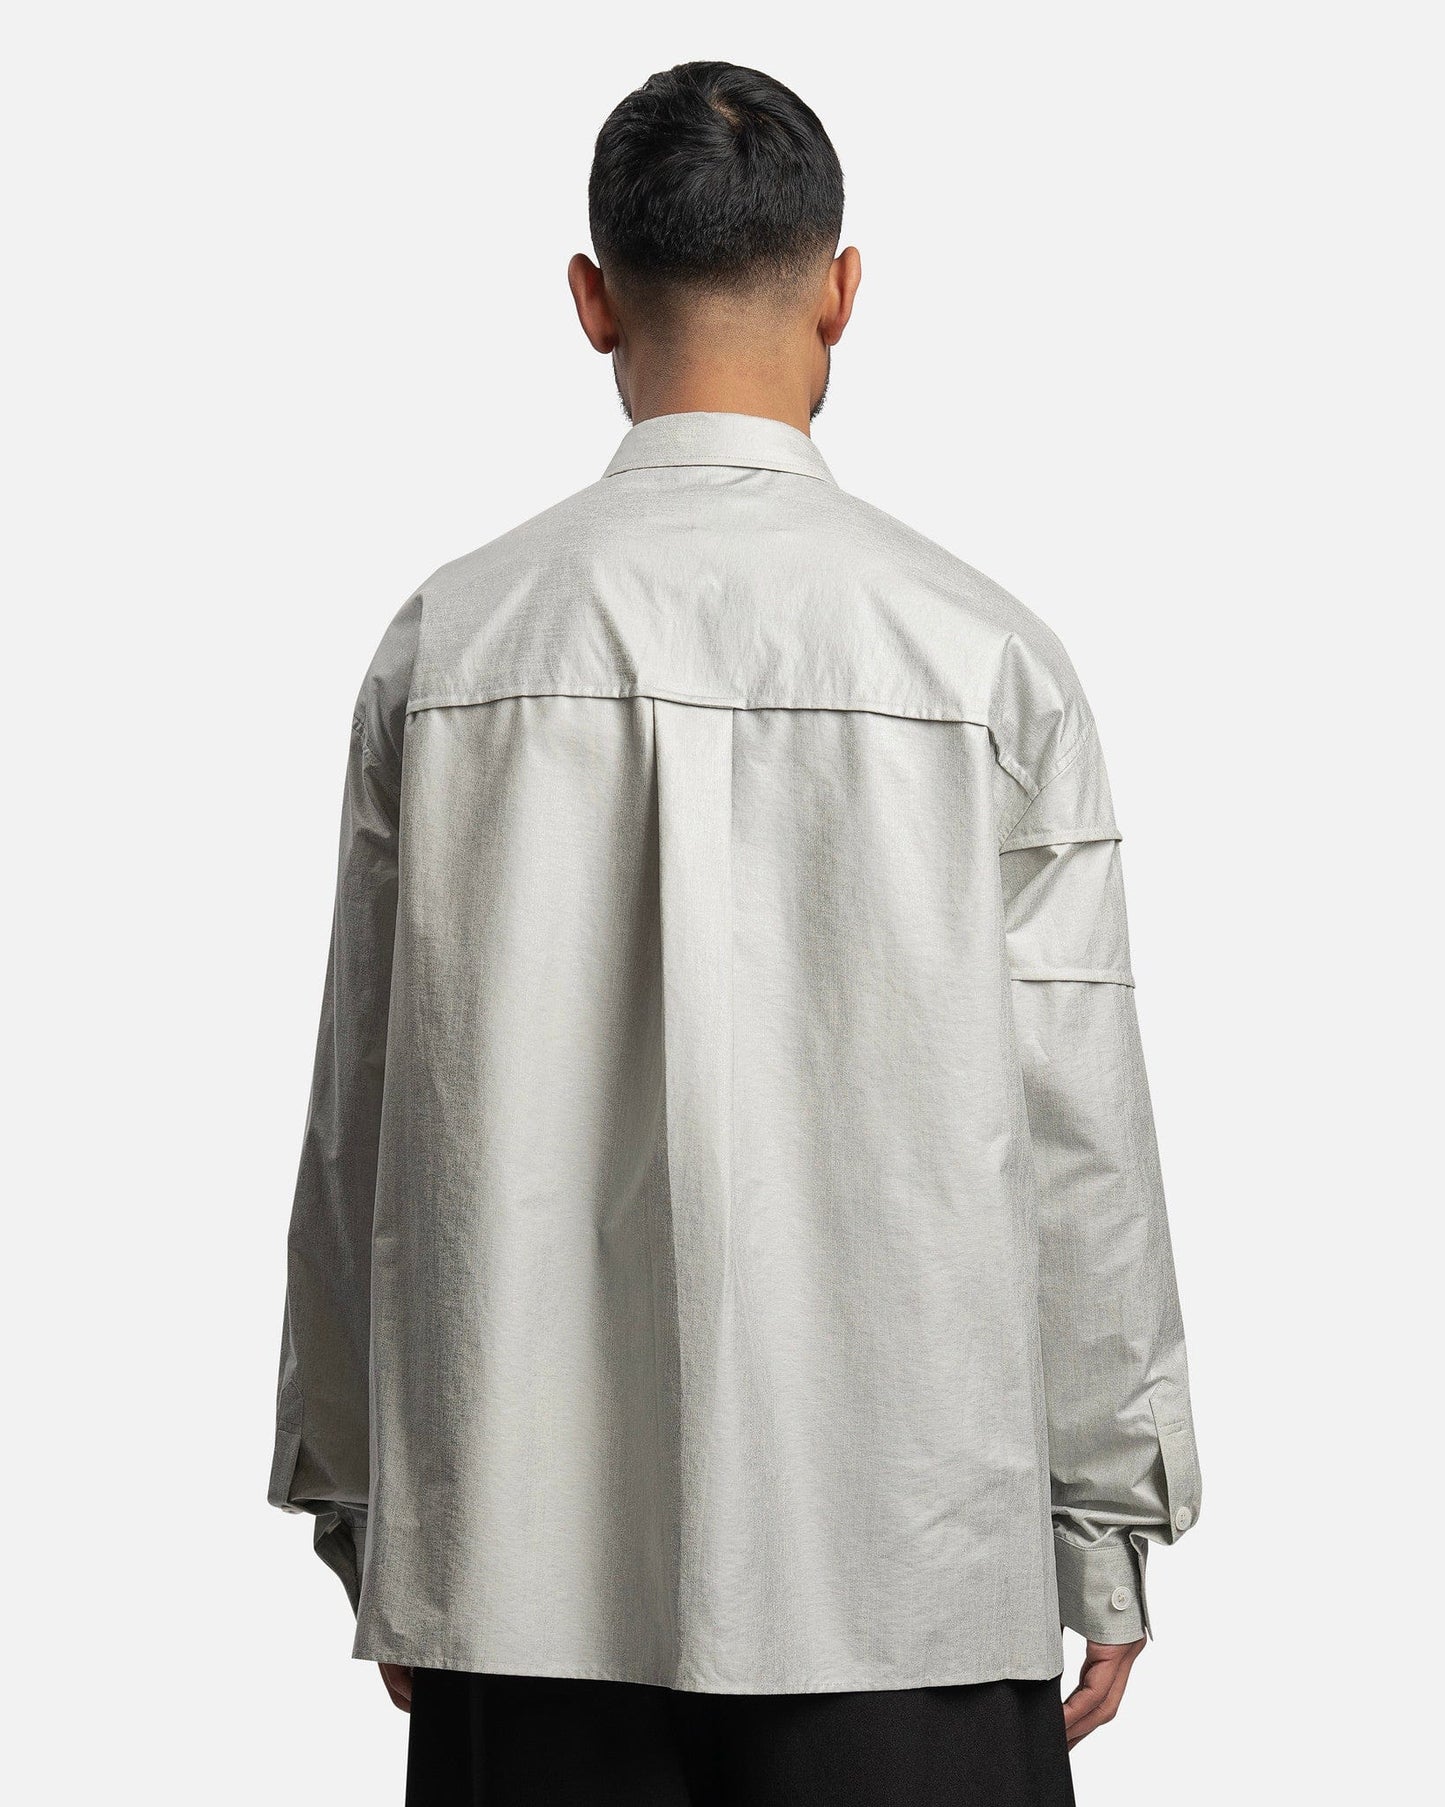 Feng Chen Wang Men's Shirts Paneled Long Sleeve Shirt in Light Grey